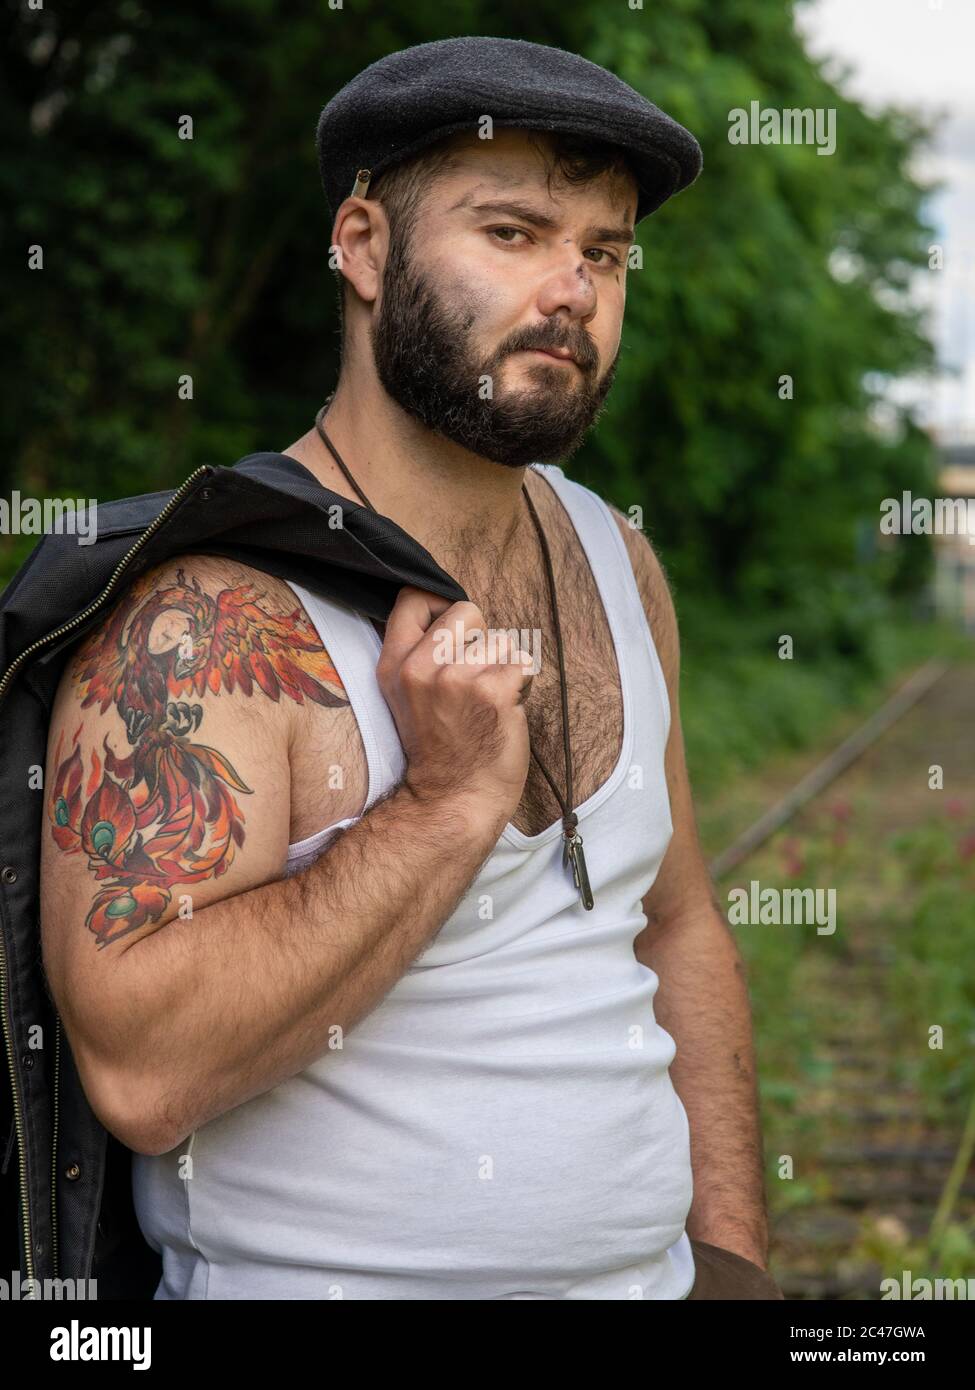 Junger, hübscher, bärtiger Mann mit Tattoos und Kohlestatzen auf der Haut, der auf einer stillstehenden Eisenbahnstrecke mit Blumen mit natürlichen Motiven draußen aufgenommen wurde Stockfoto